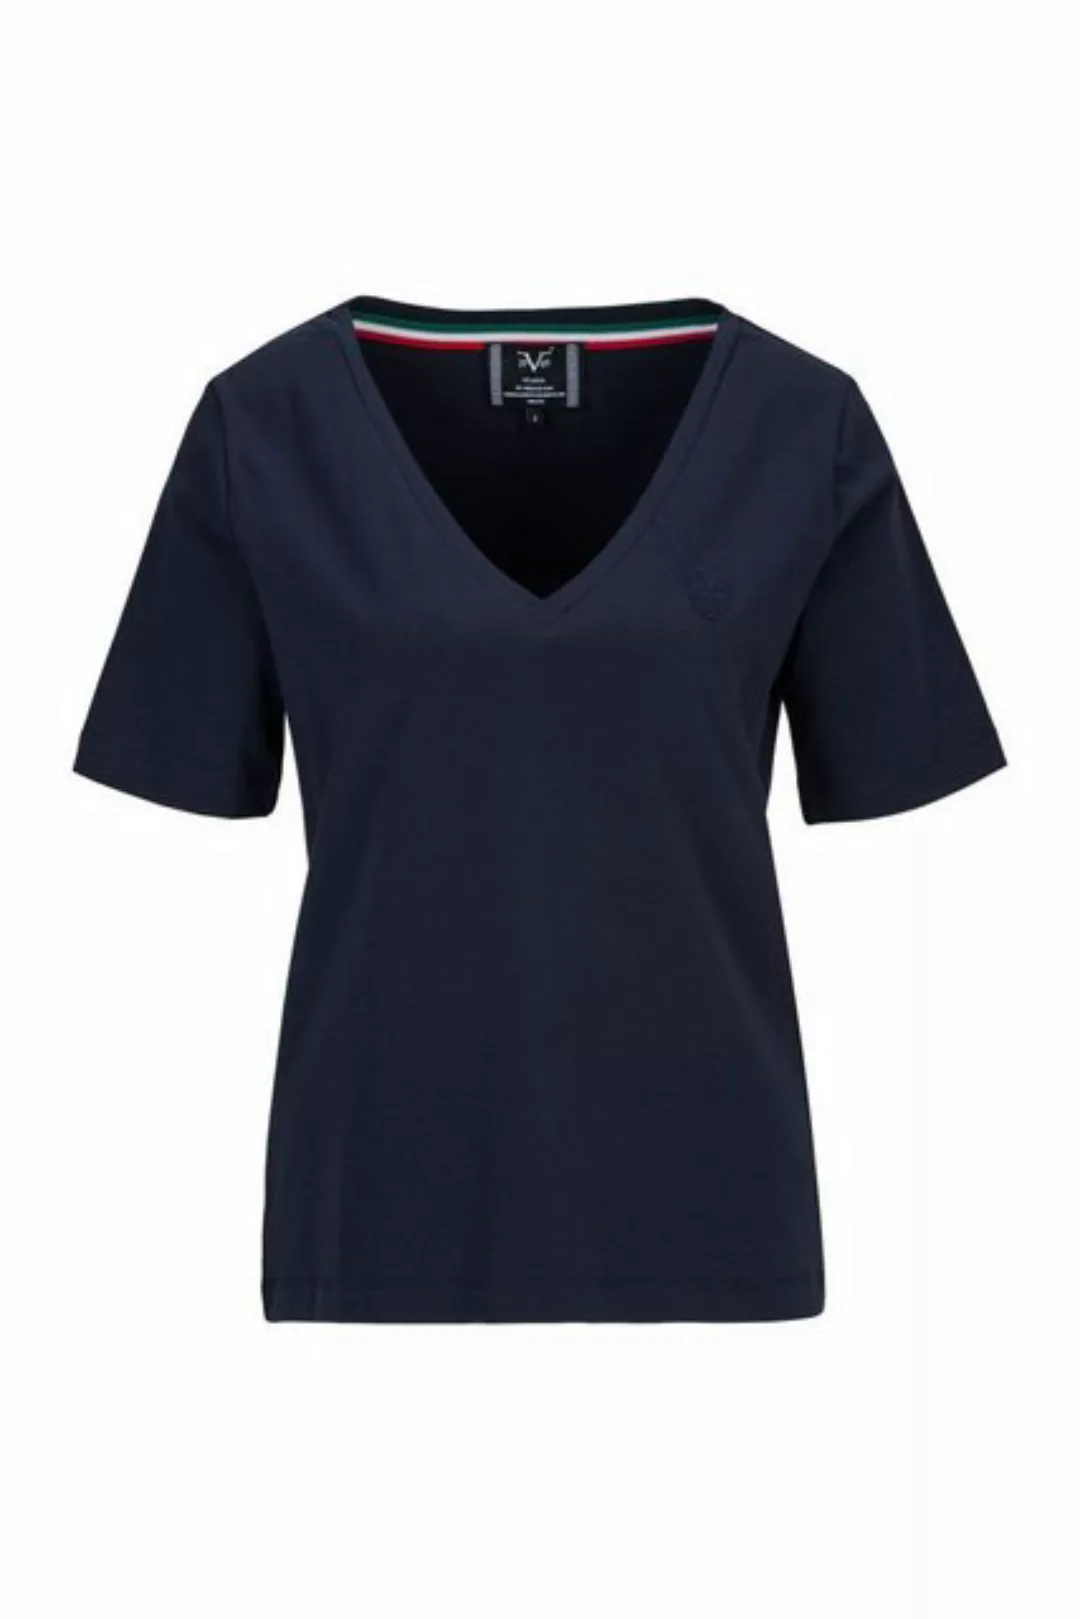 19V69 Italia by Versace T-Shirt BAILA Damen Basic V-Ausschnitt Kurzarm-Shir günstig online kaufen